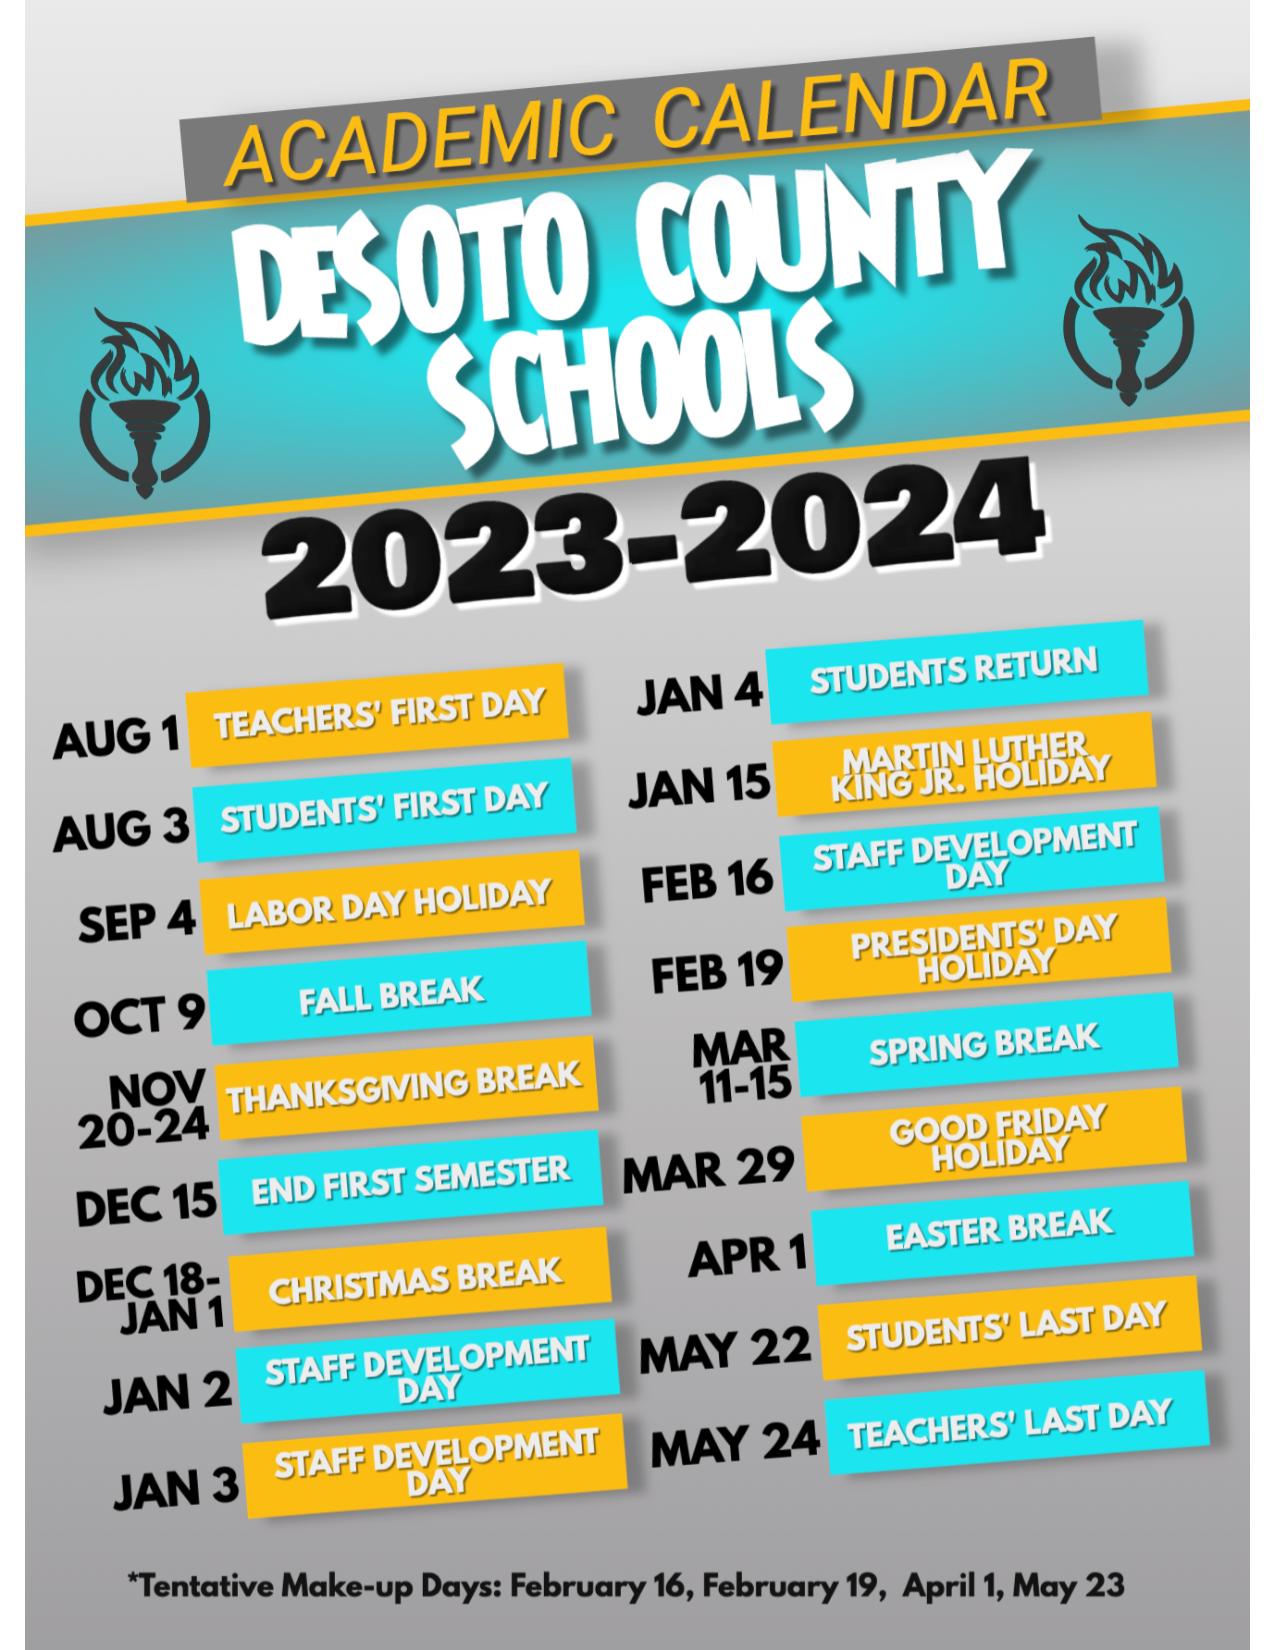 DeSoto County Schools Calendar 20232024 (Holiday Breaks)